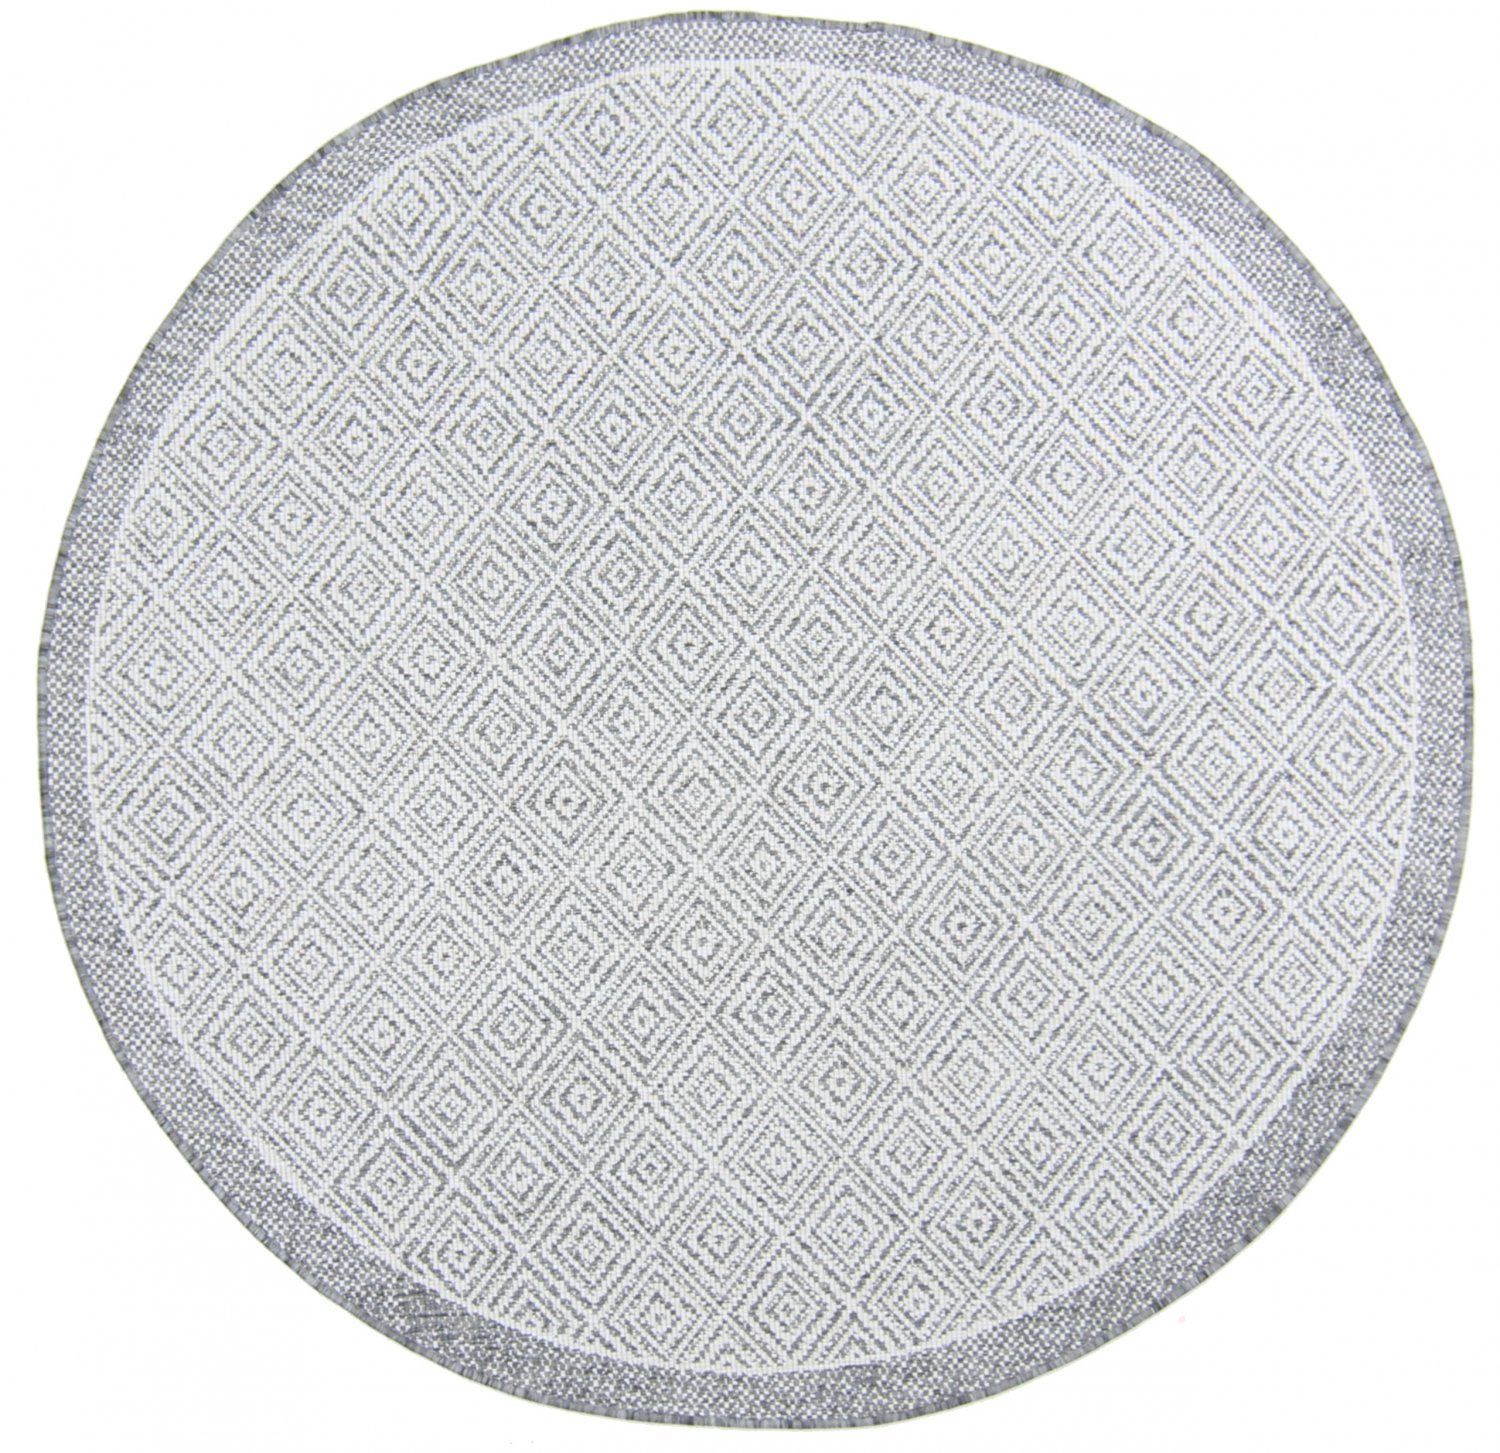 Rundt teppe - Monsaraz (grå)